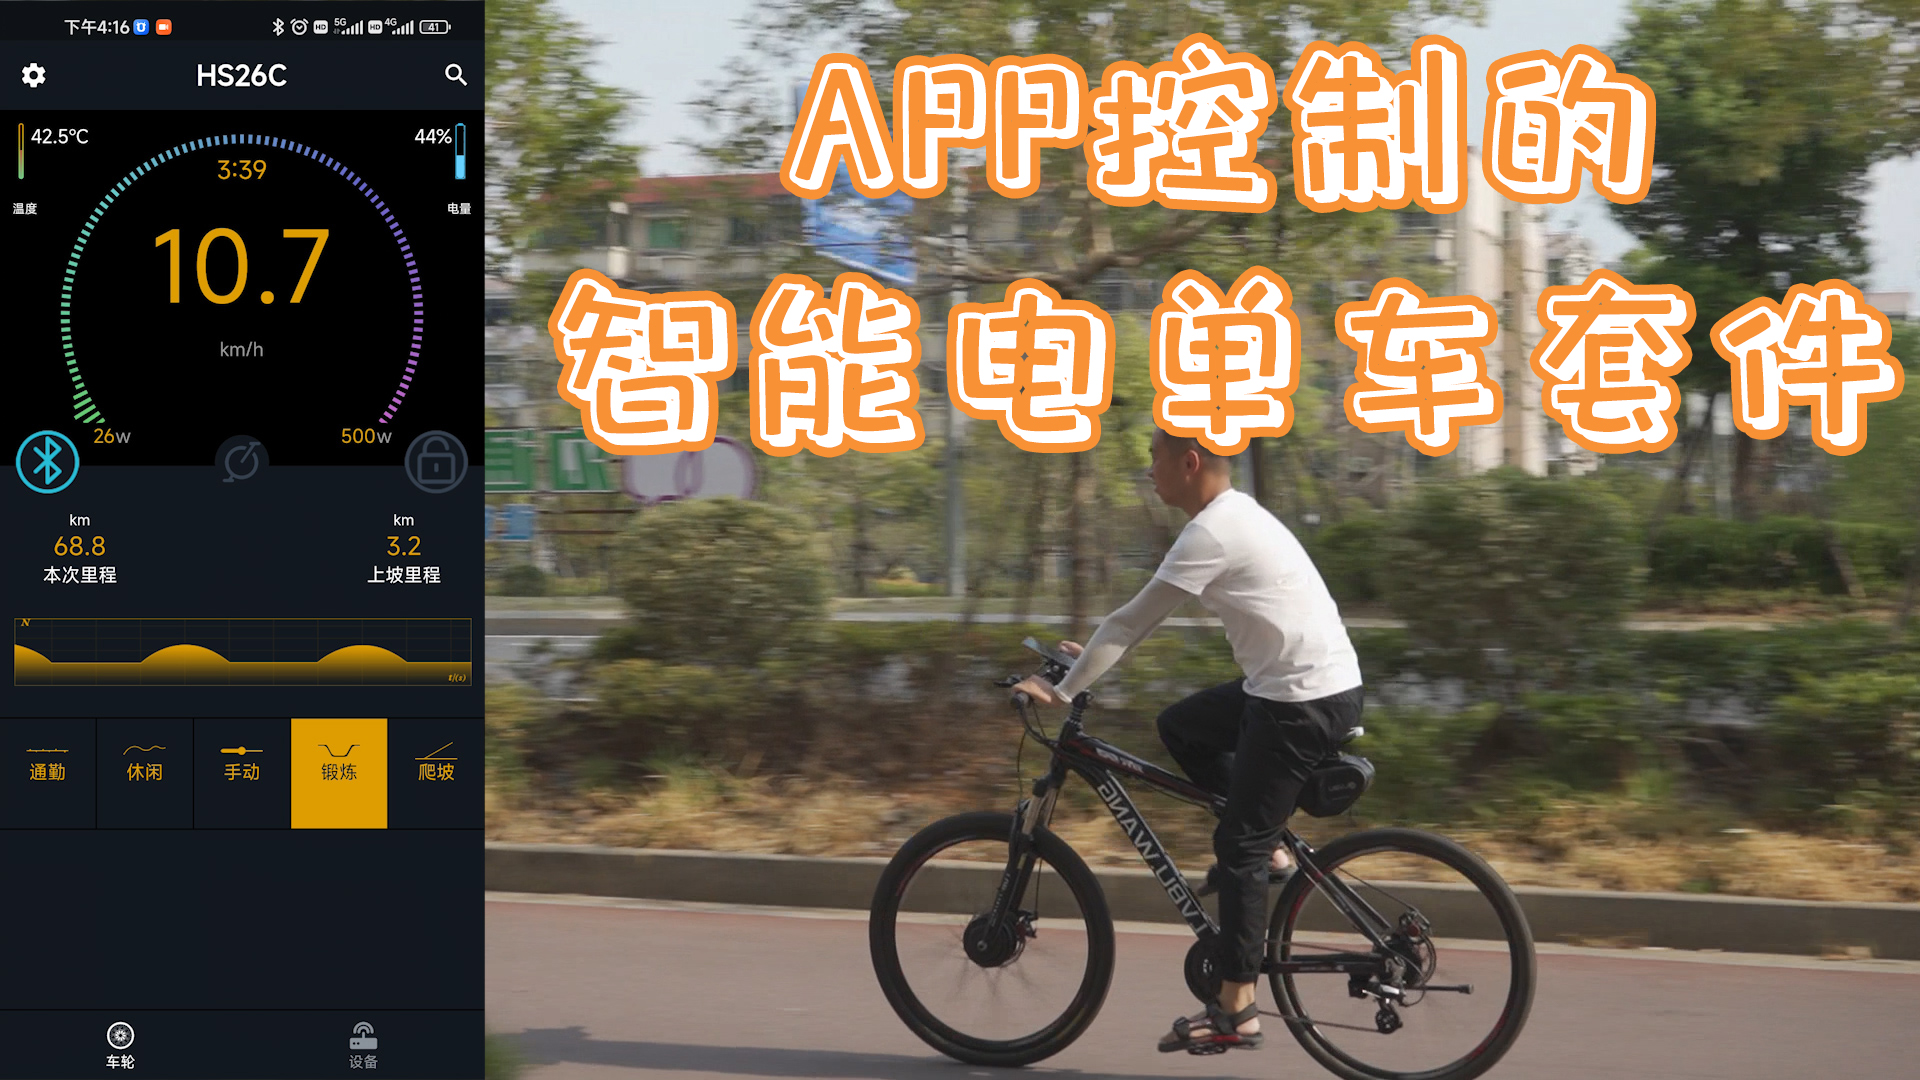 APP控制的智能電單車套件